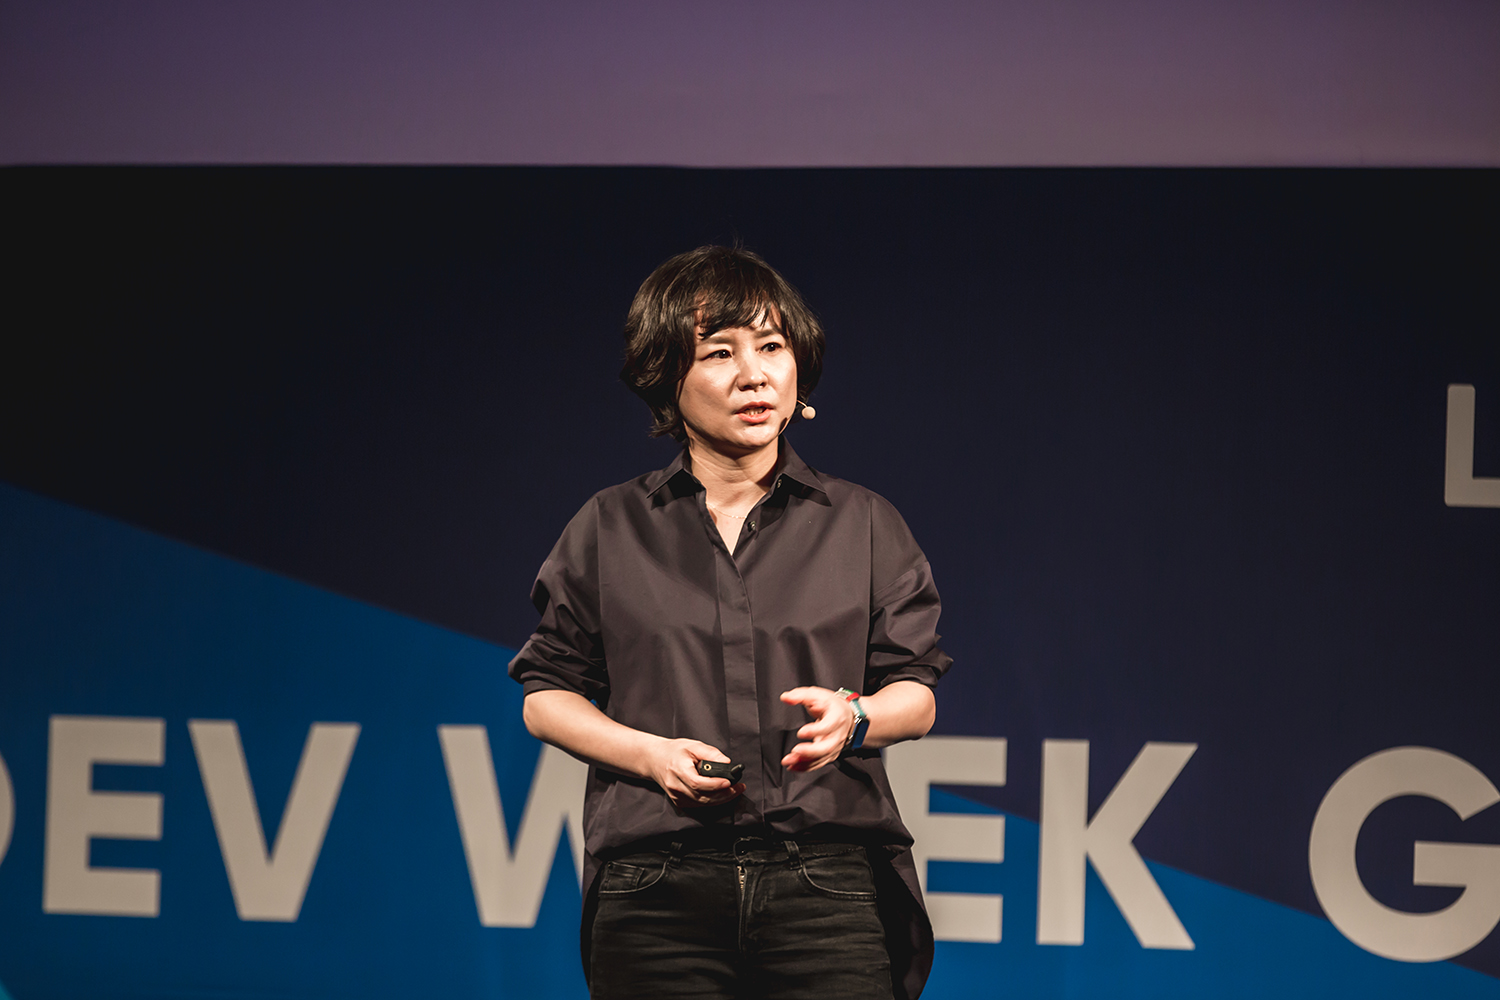 全球各地共千名的LINE開發工程師齊聚首爾參加LINE DEV WEEK 2018。